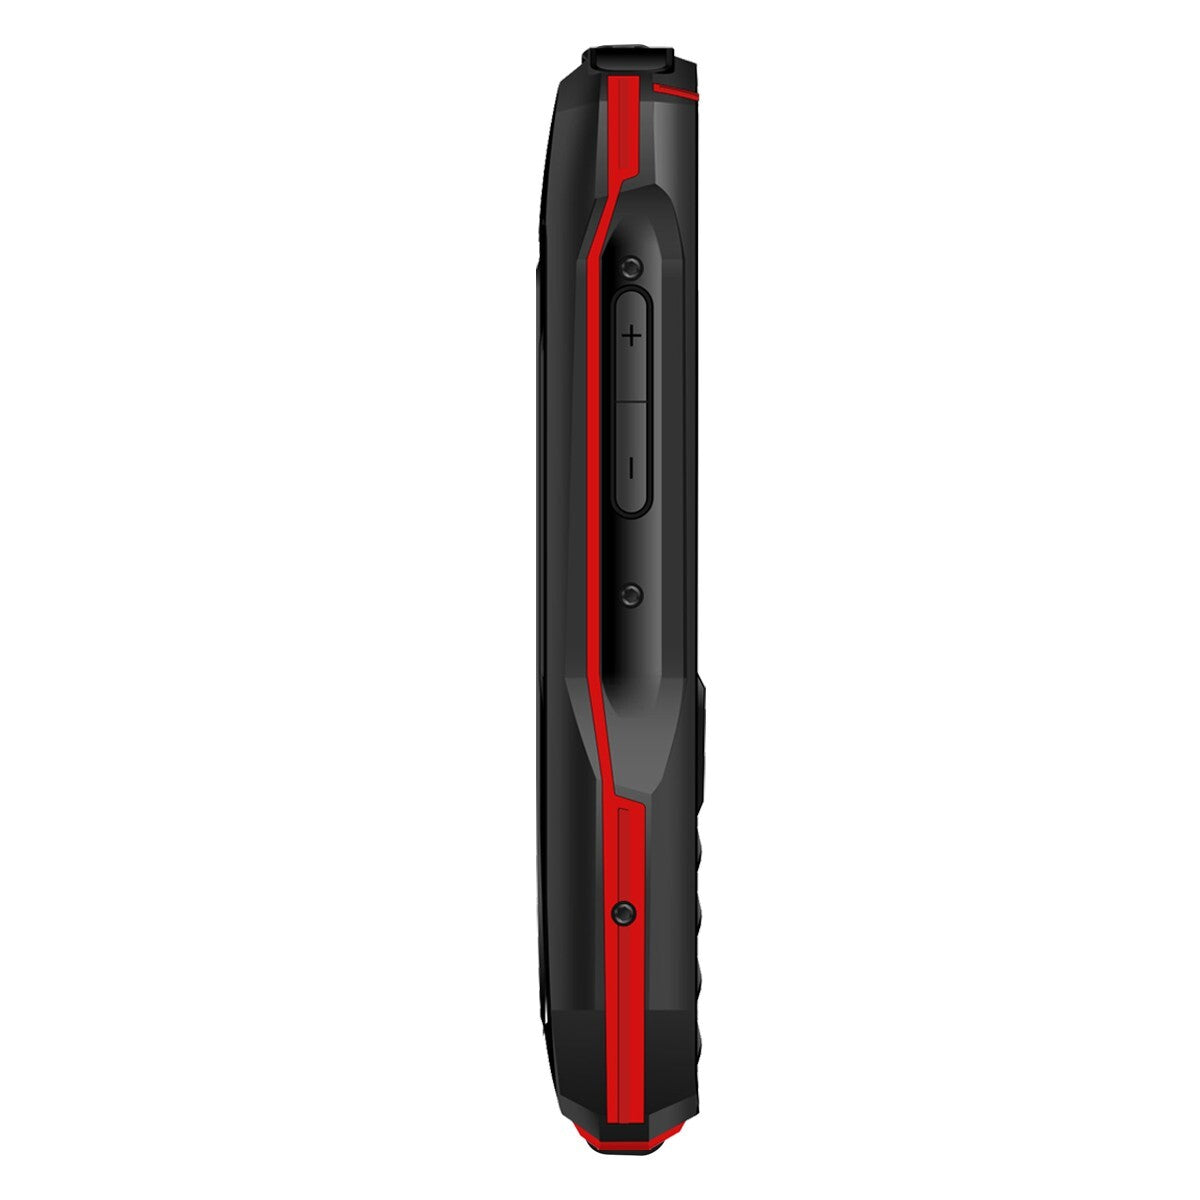 Odolný tlačítkový telefon Aligator K50 eXtremo, KaiOS, červená